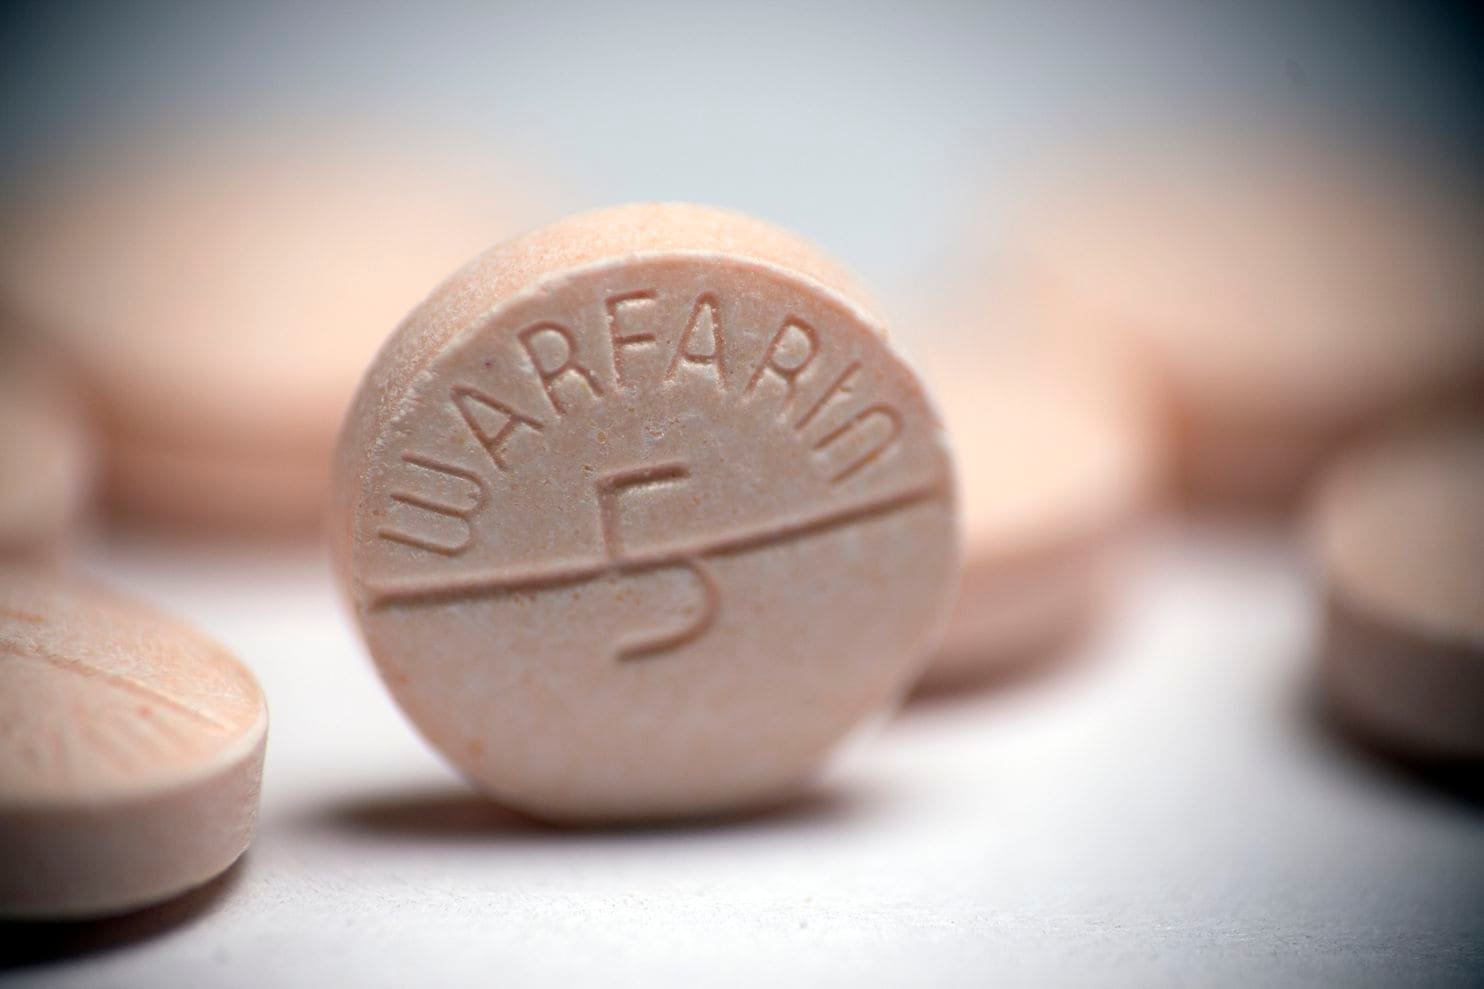 Người dùng Warfarin: Hãy cẩn thận với thuốc kháng sinh